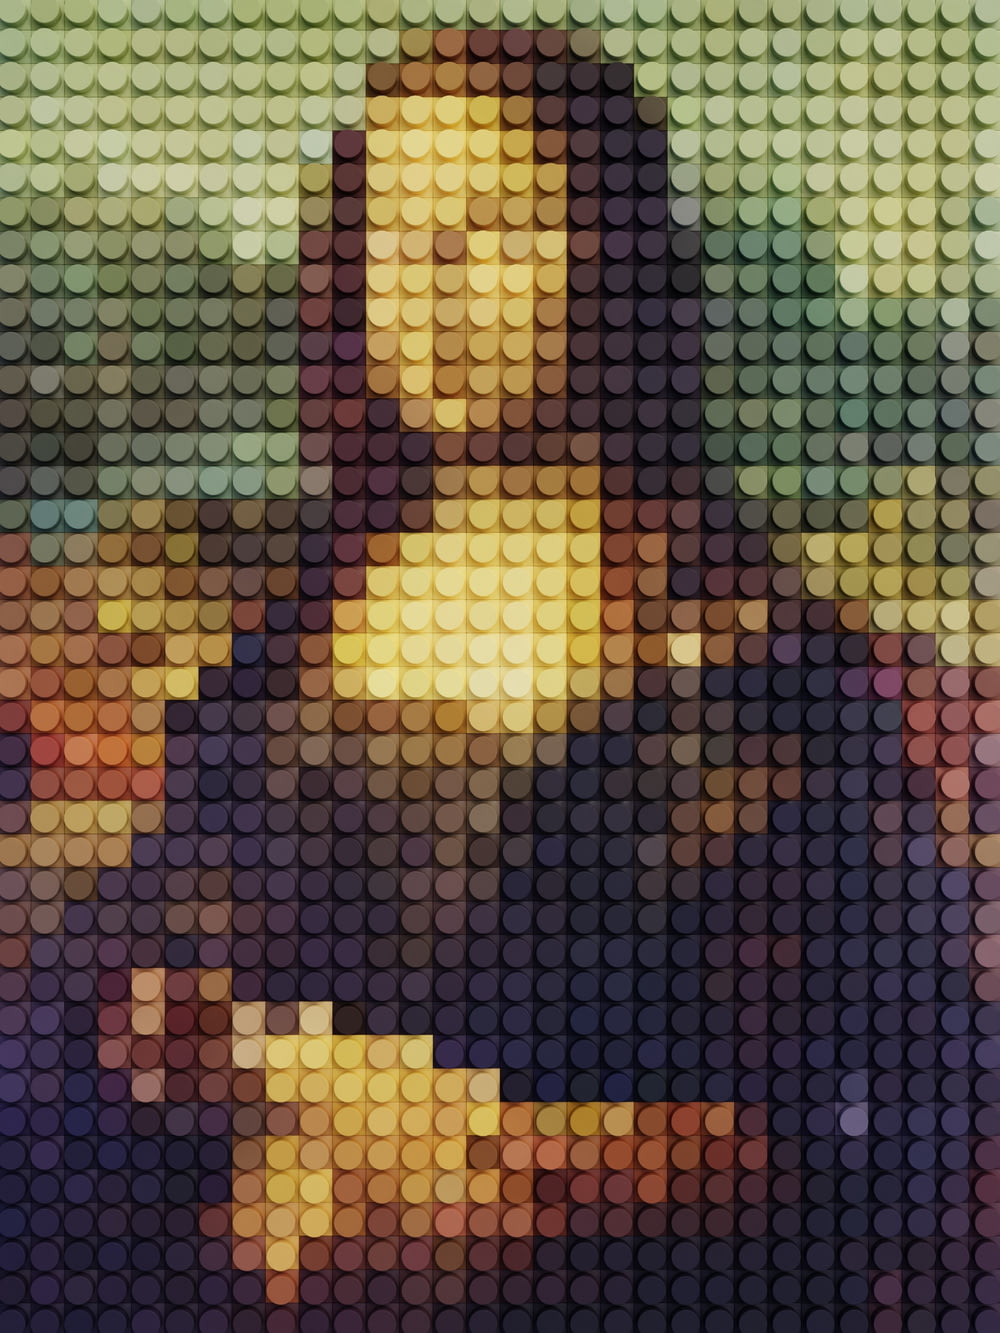 Ein Bild einer Frau aus Legos